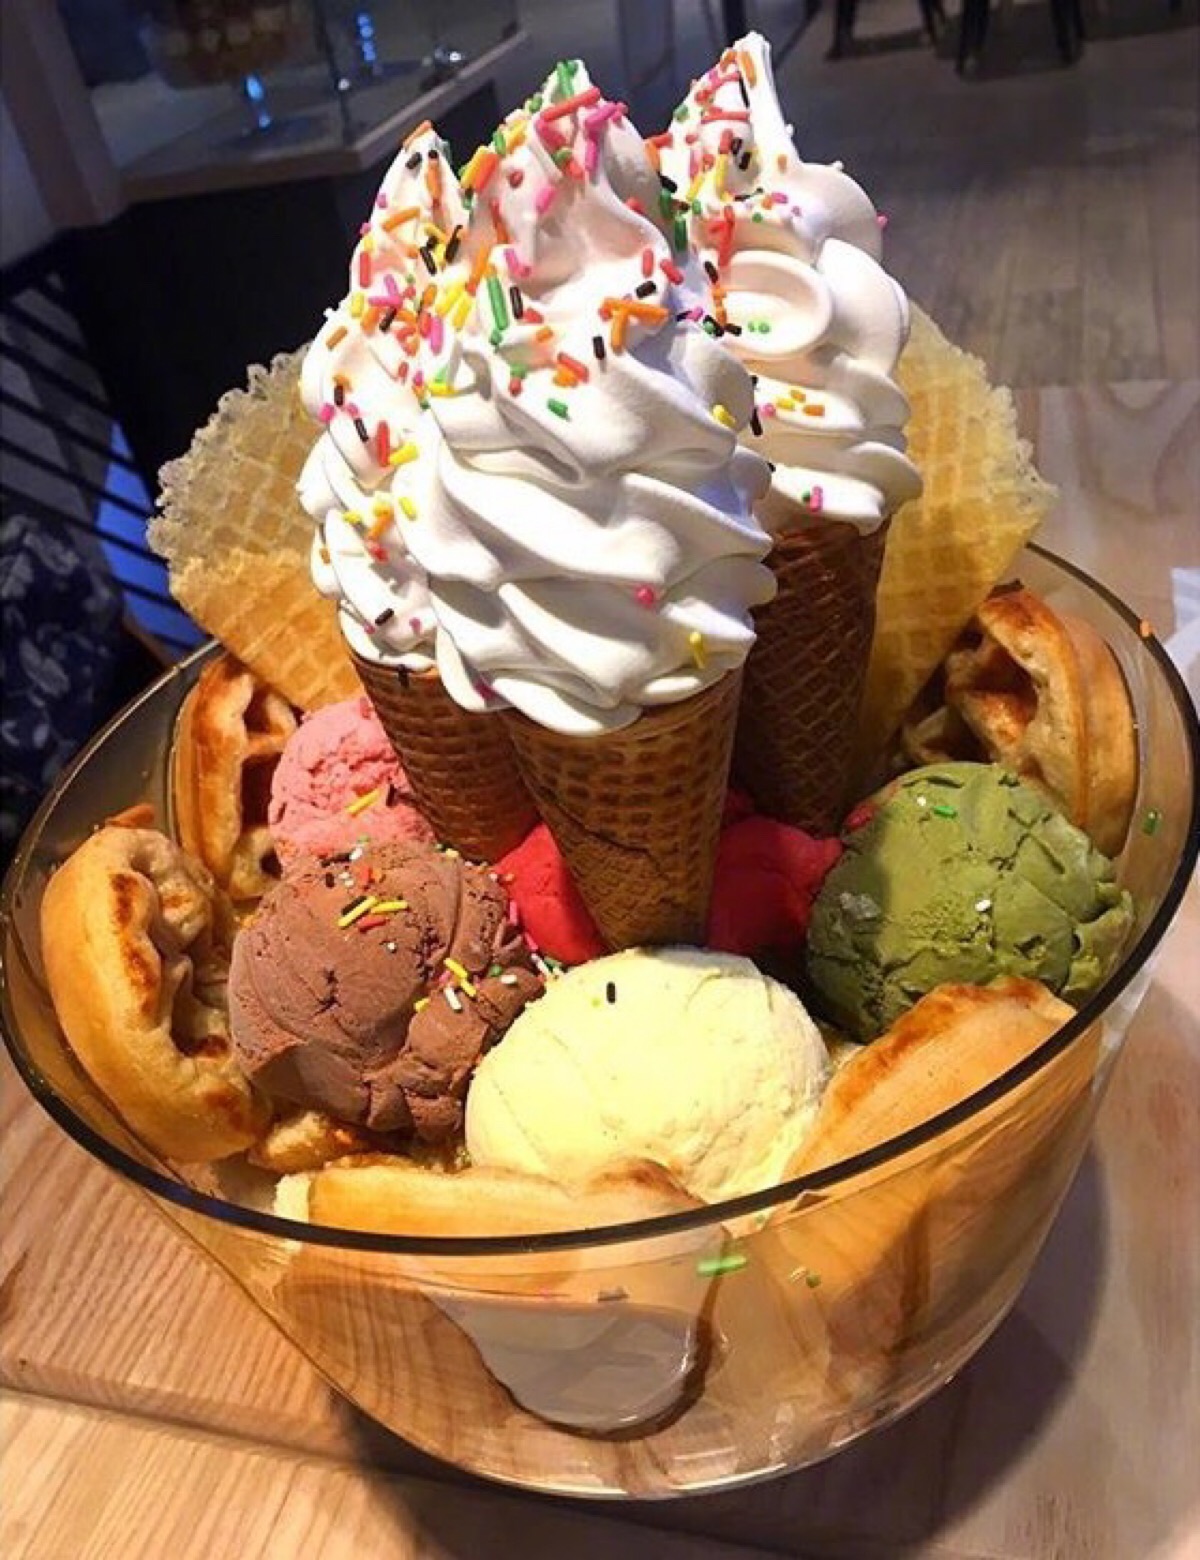 泰国曼谷 mo&moshi 甜品店推出的巨型冰淇淋